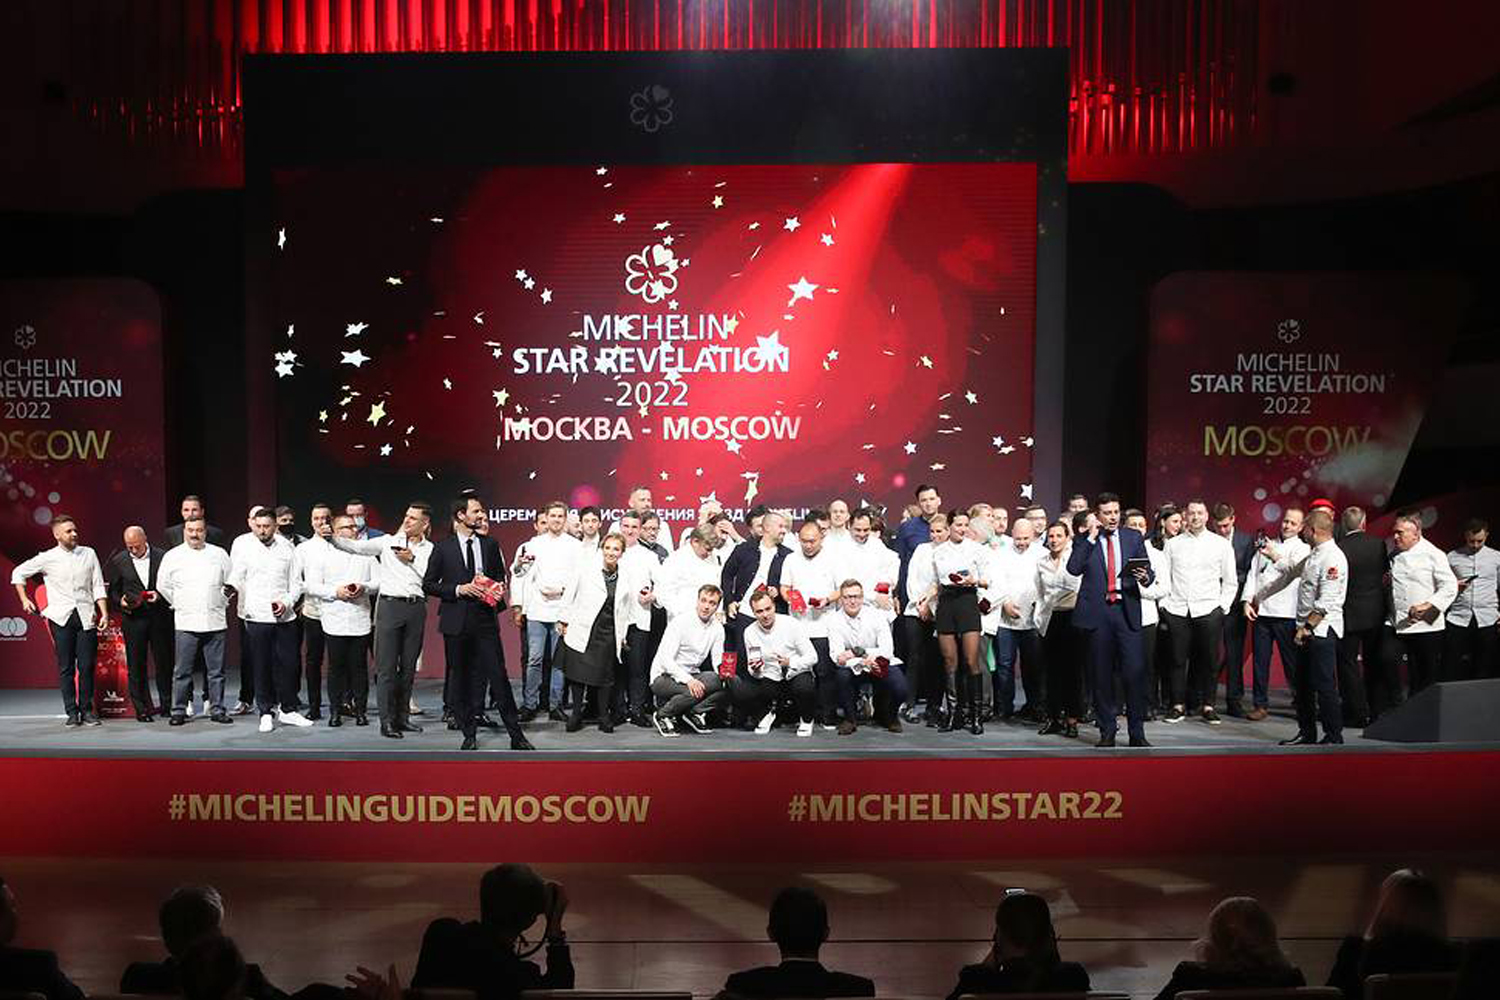 Մոսկովյան 9 ռեստորան Michelin-ի աստղ է ստացել